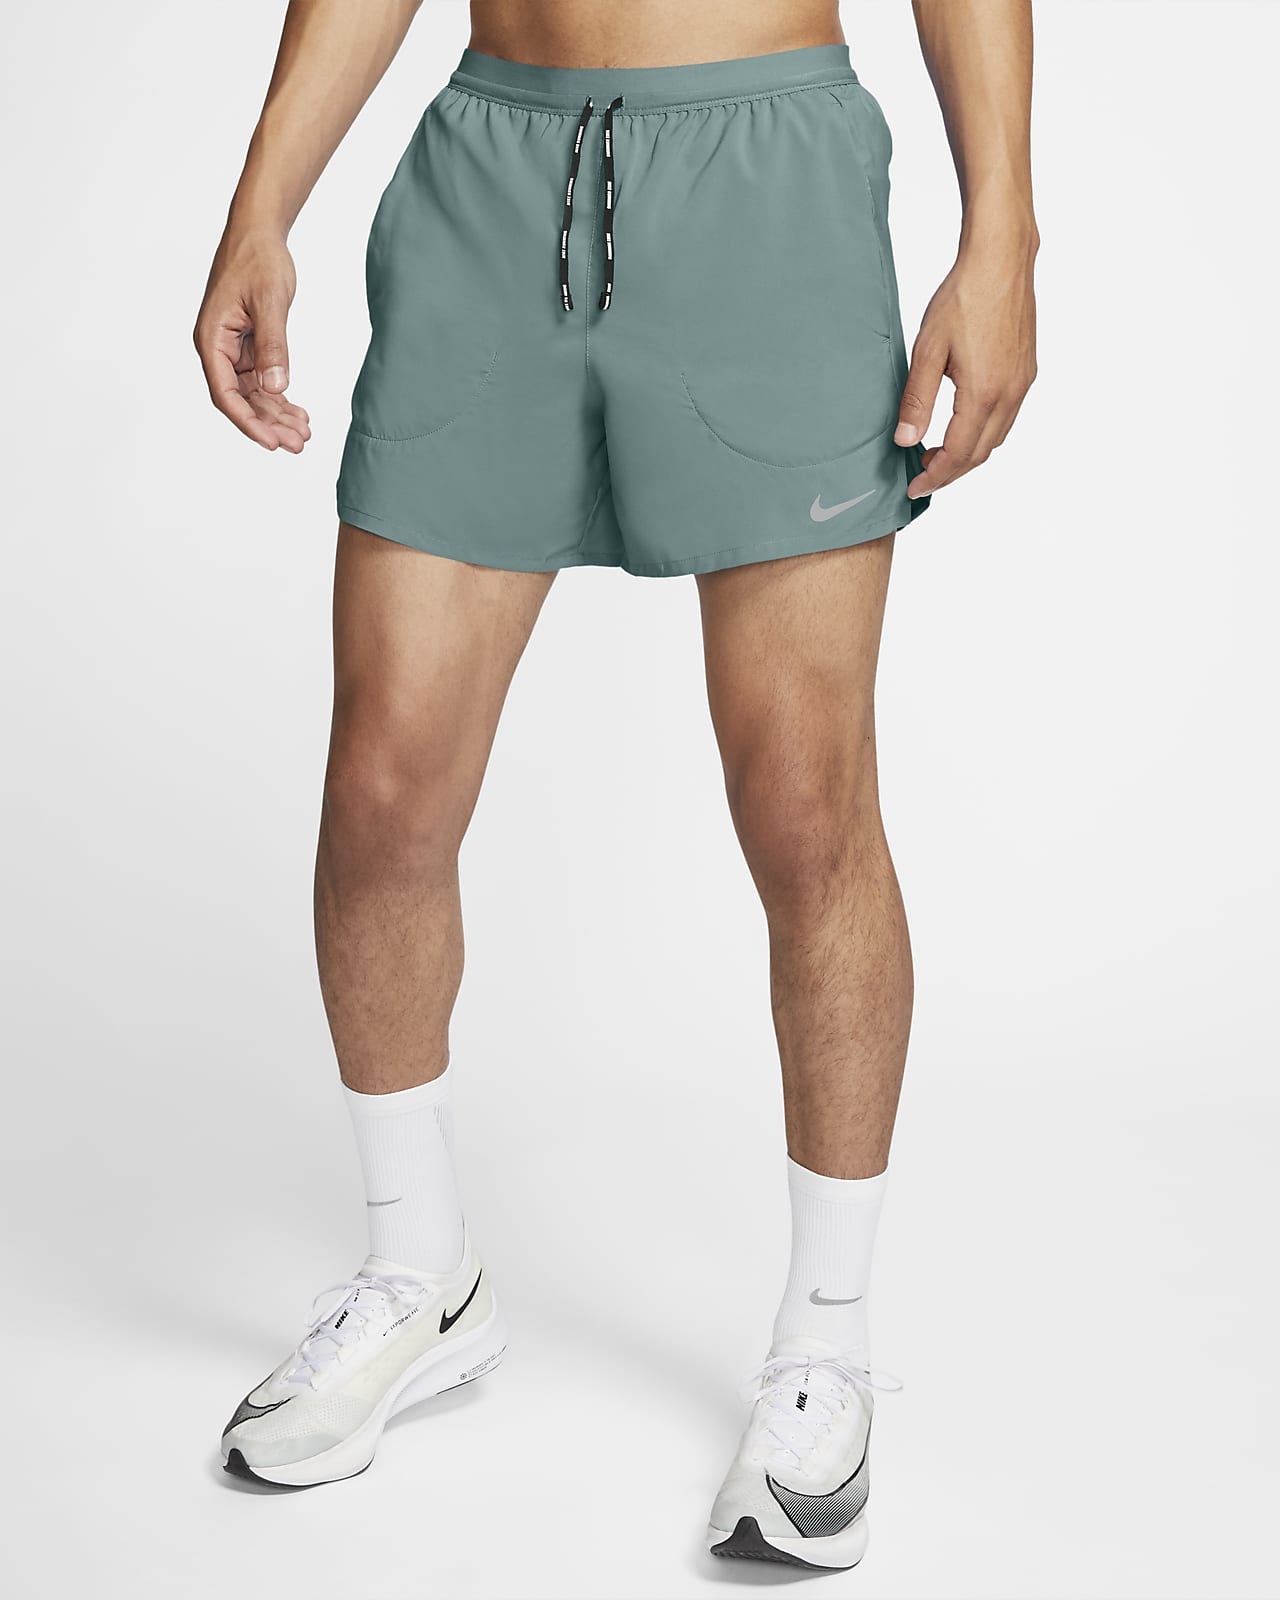 At søge tilflugt Site line skab Nike Flex Stride Men's 5" Brief Running Shorts. Nike.com